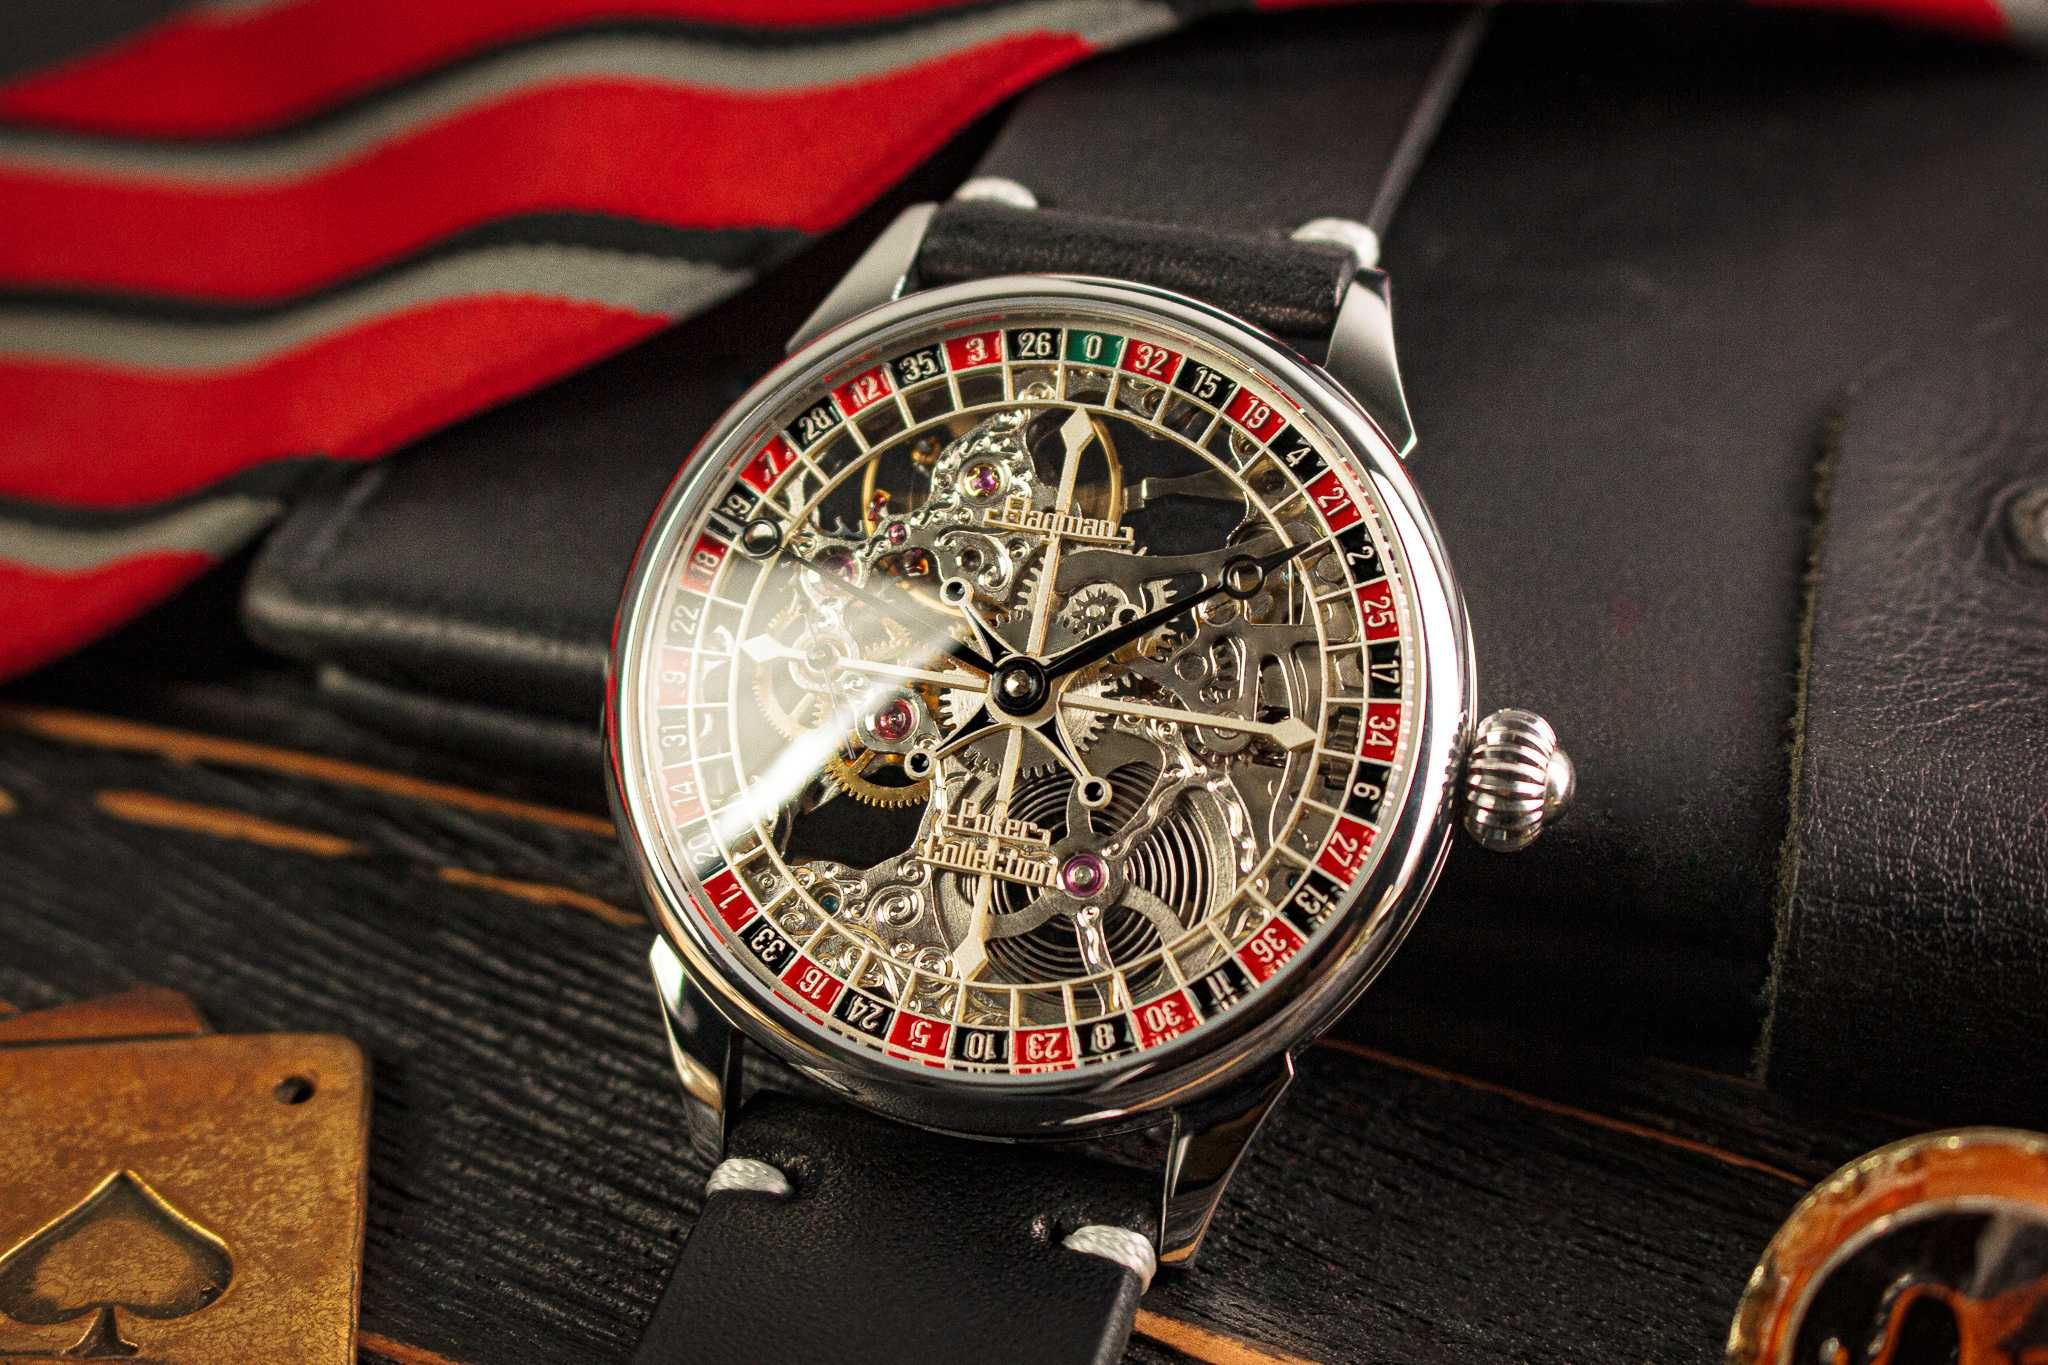 Наручные часы скелетон ручной работы в азартном/покер стиле